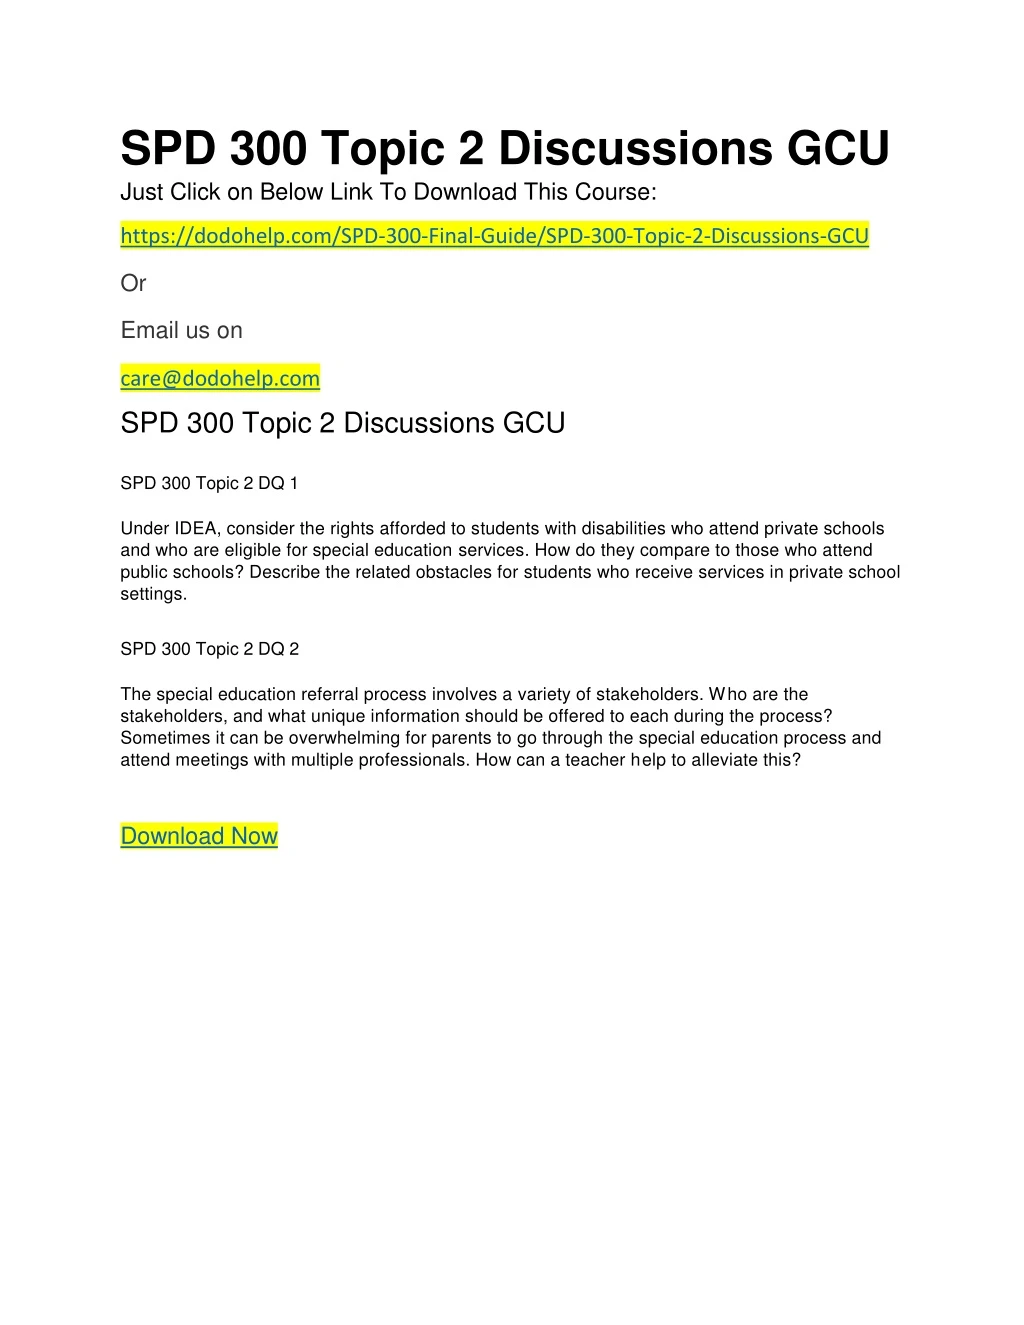 spd 300 topic 2 discussions gcu just click